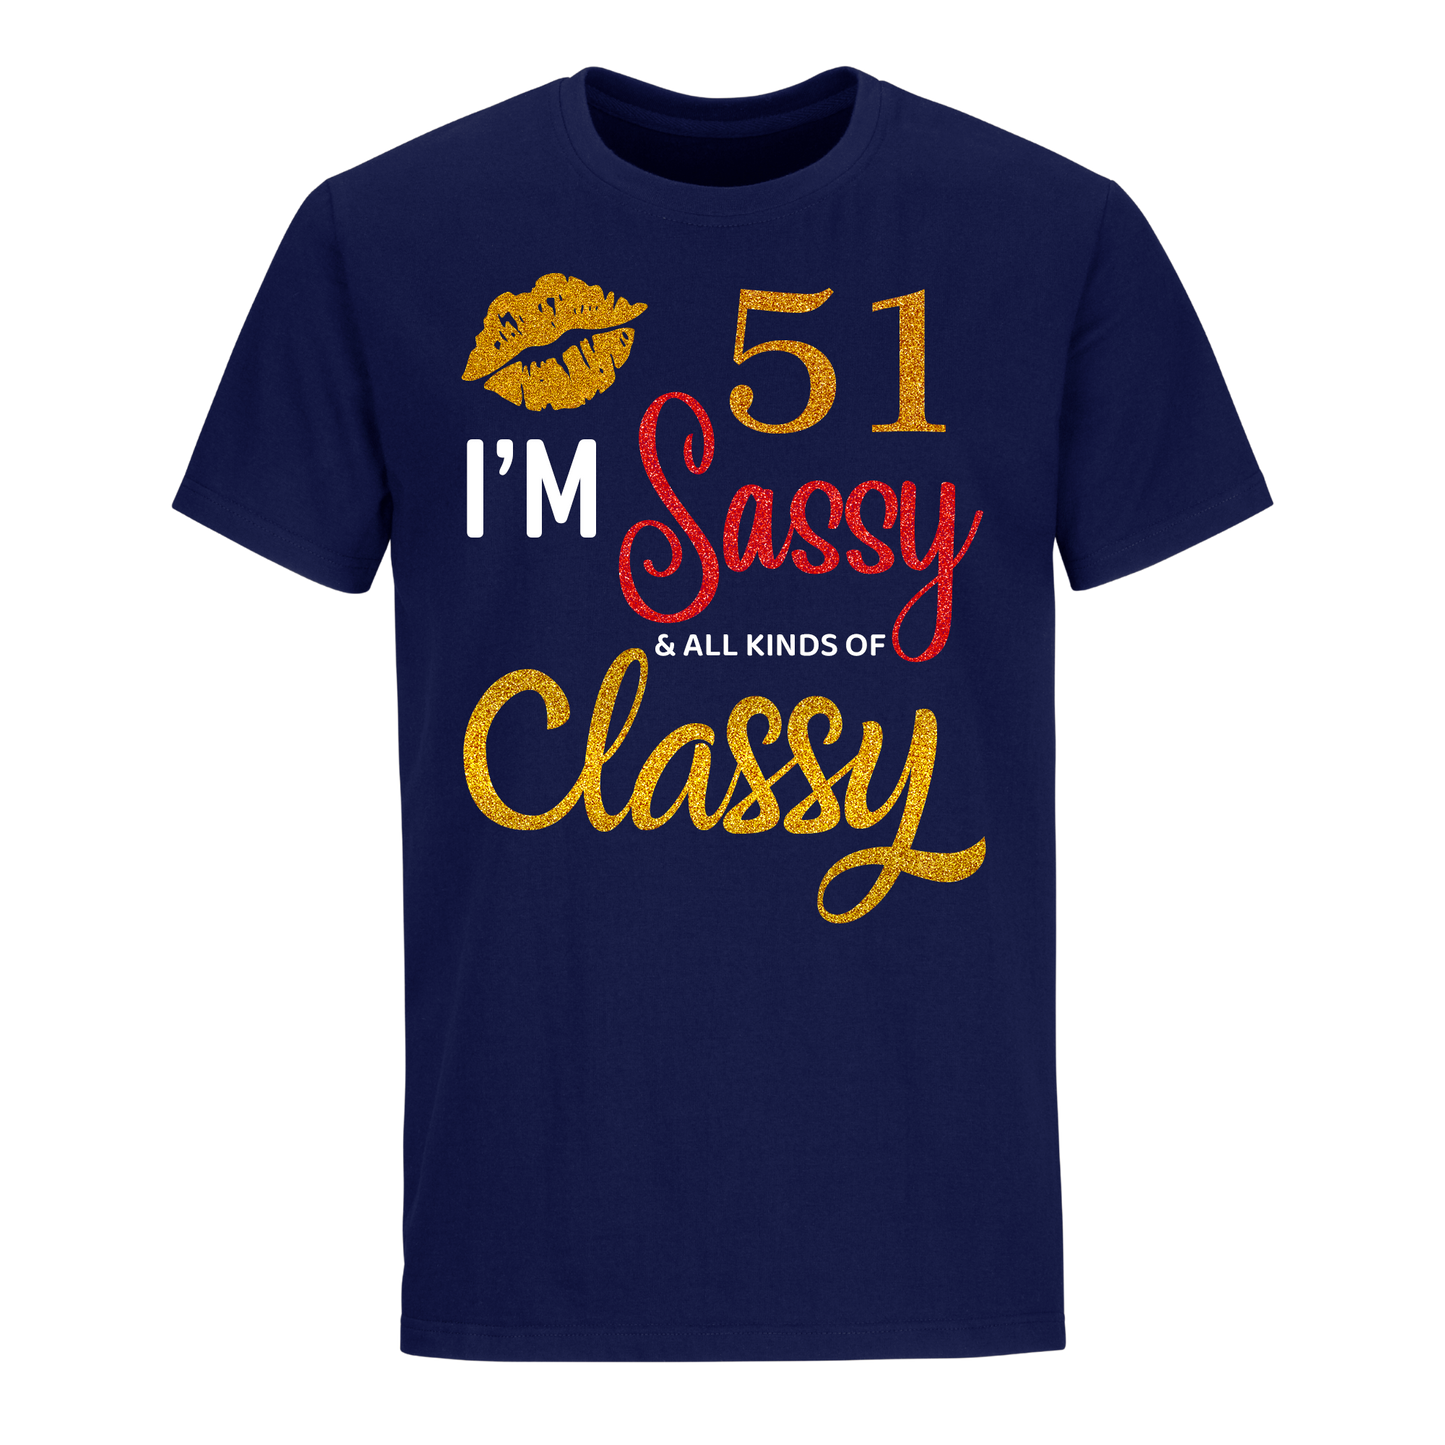 I'M 51 SASSY SHIRT